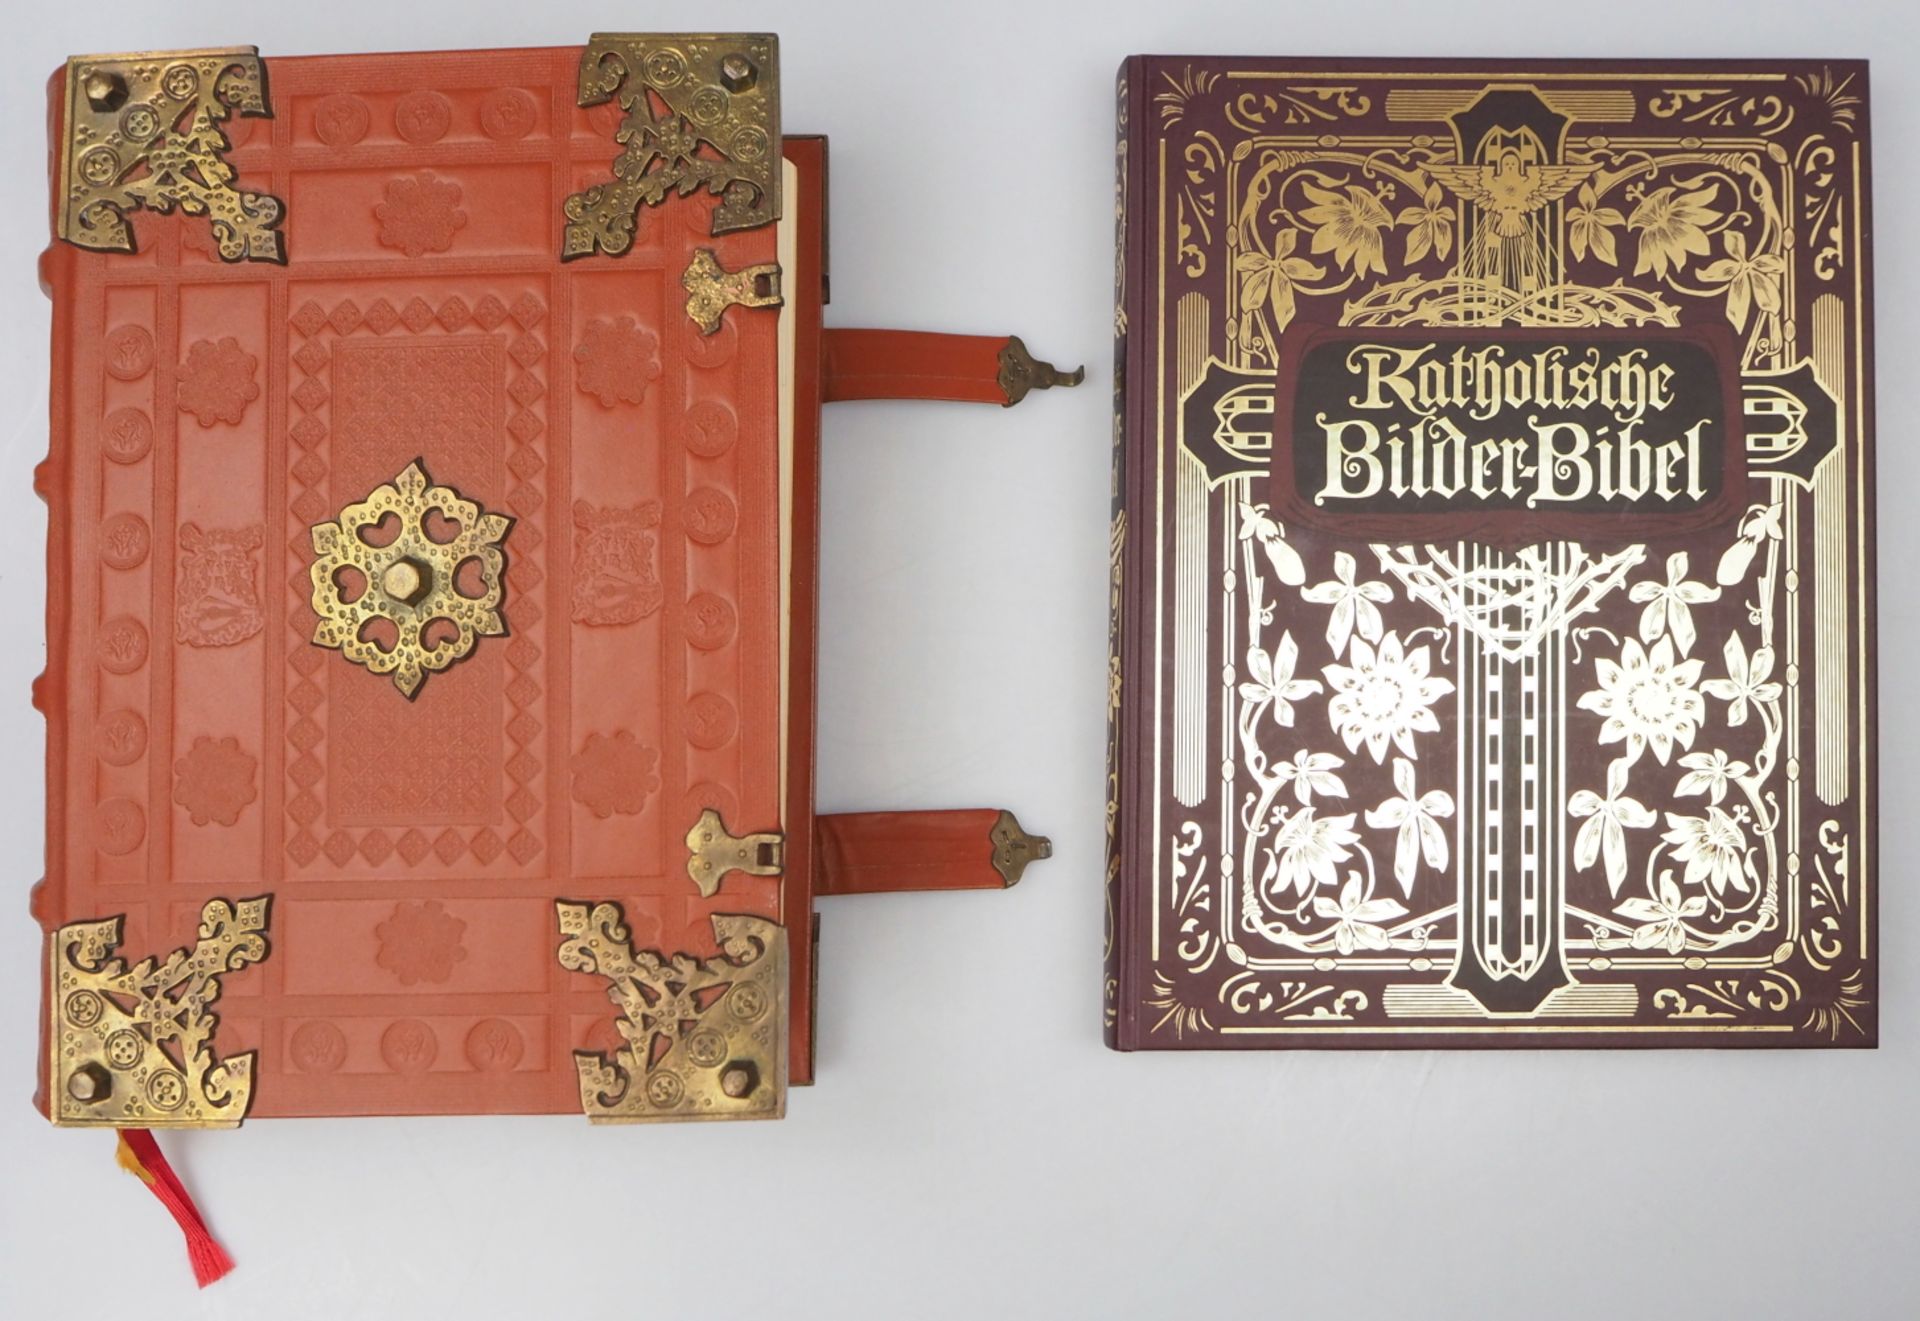 1 Prachtbibel "Die Heilige Schrift des Alten und Neuen Testamentes" Augsburg 1991